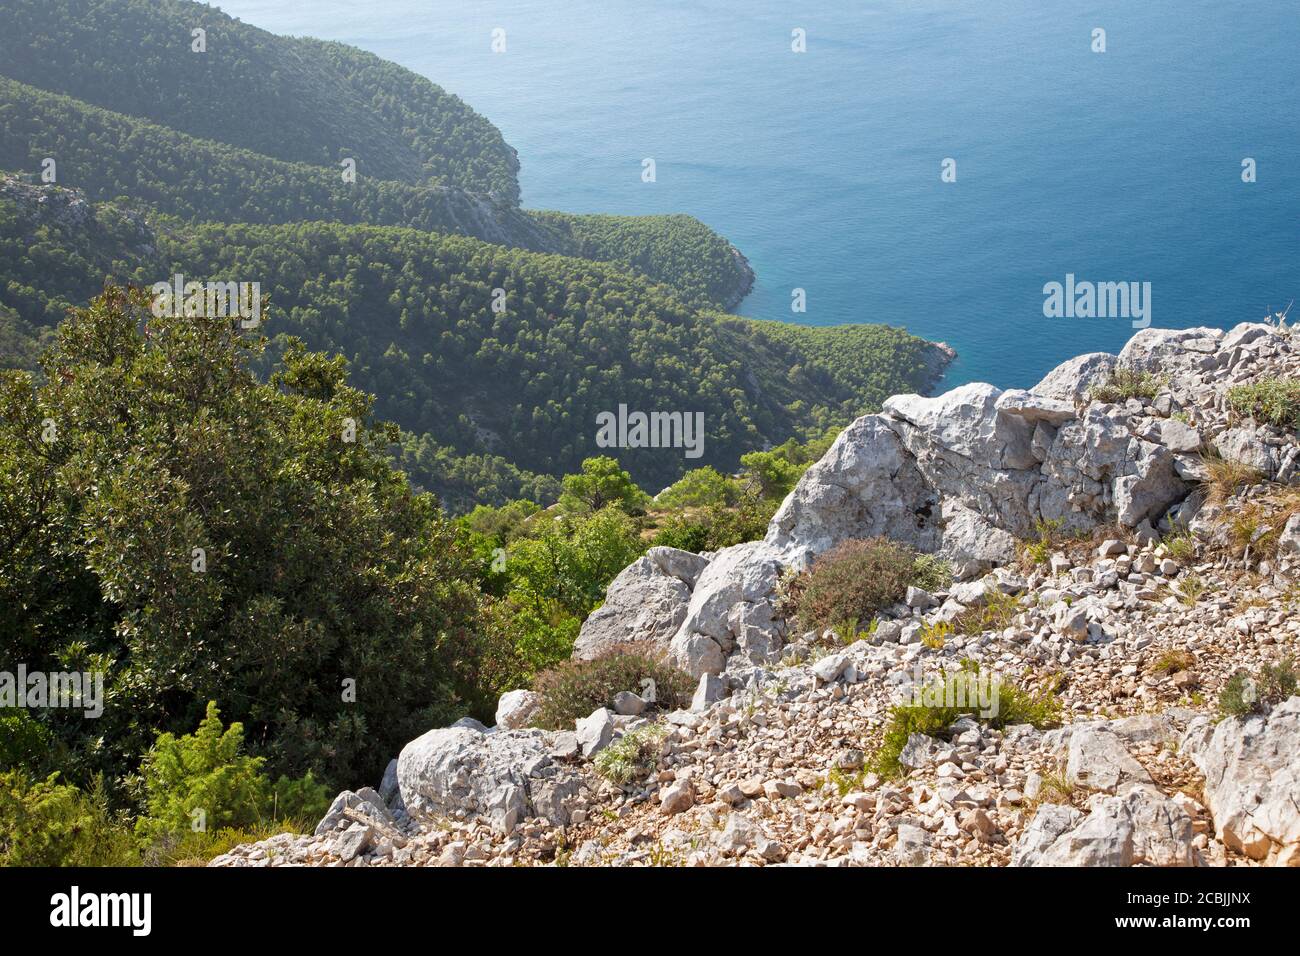 Croatie - le paysage sauvage et la côte de la péninsule de Peliesac près de Zuliana de Sveti Ivan pic. Banque D'Images